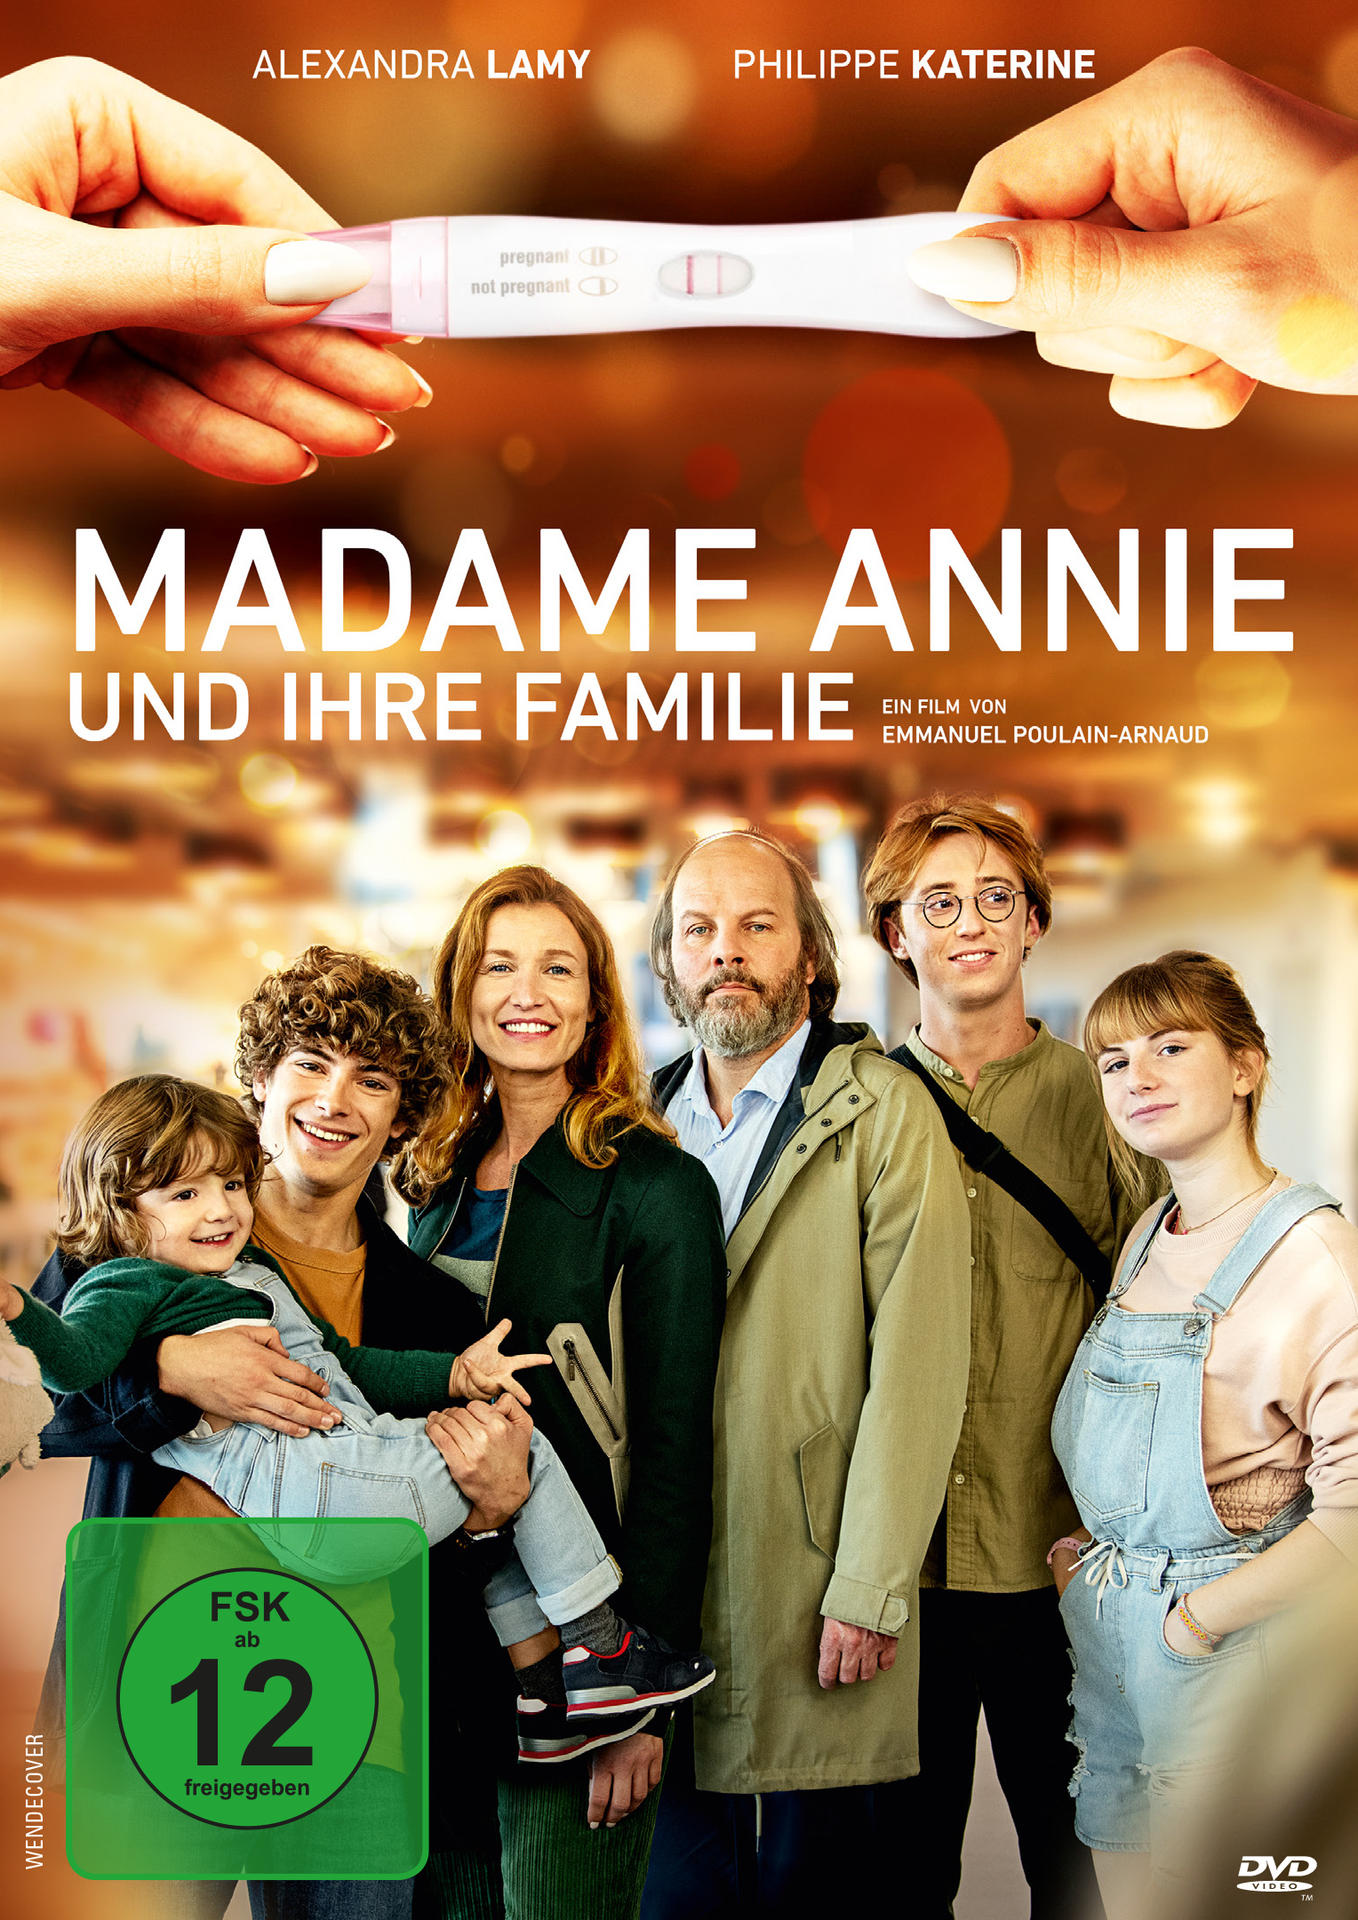 DVD Annie Madame Familie ihre und